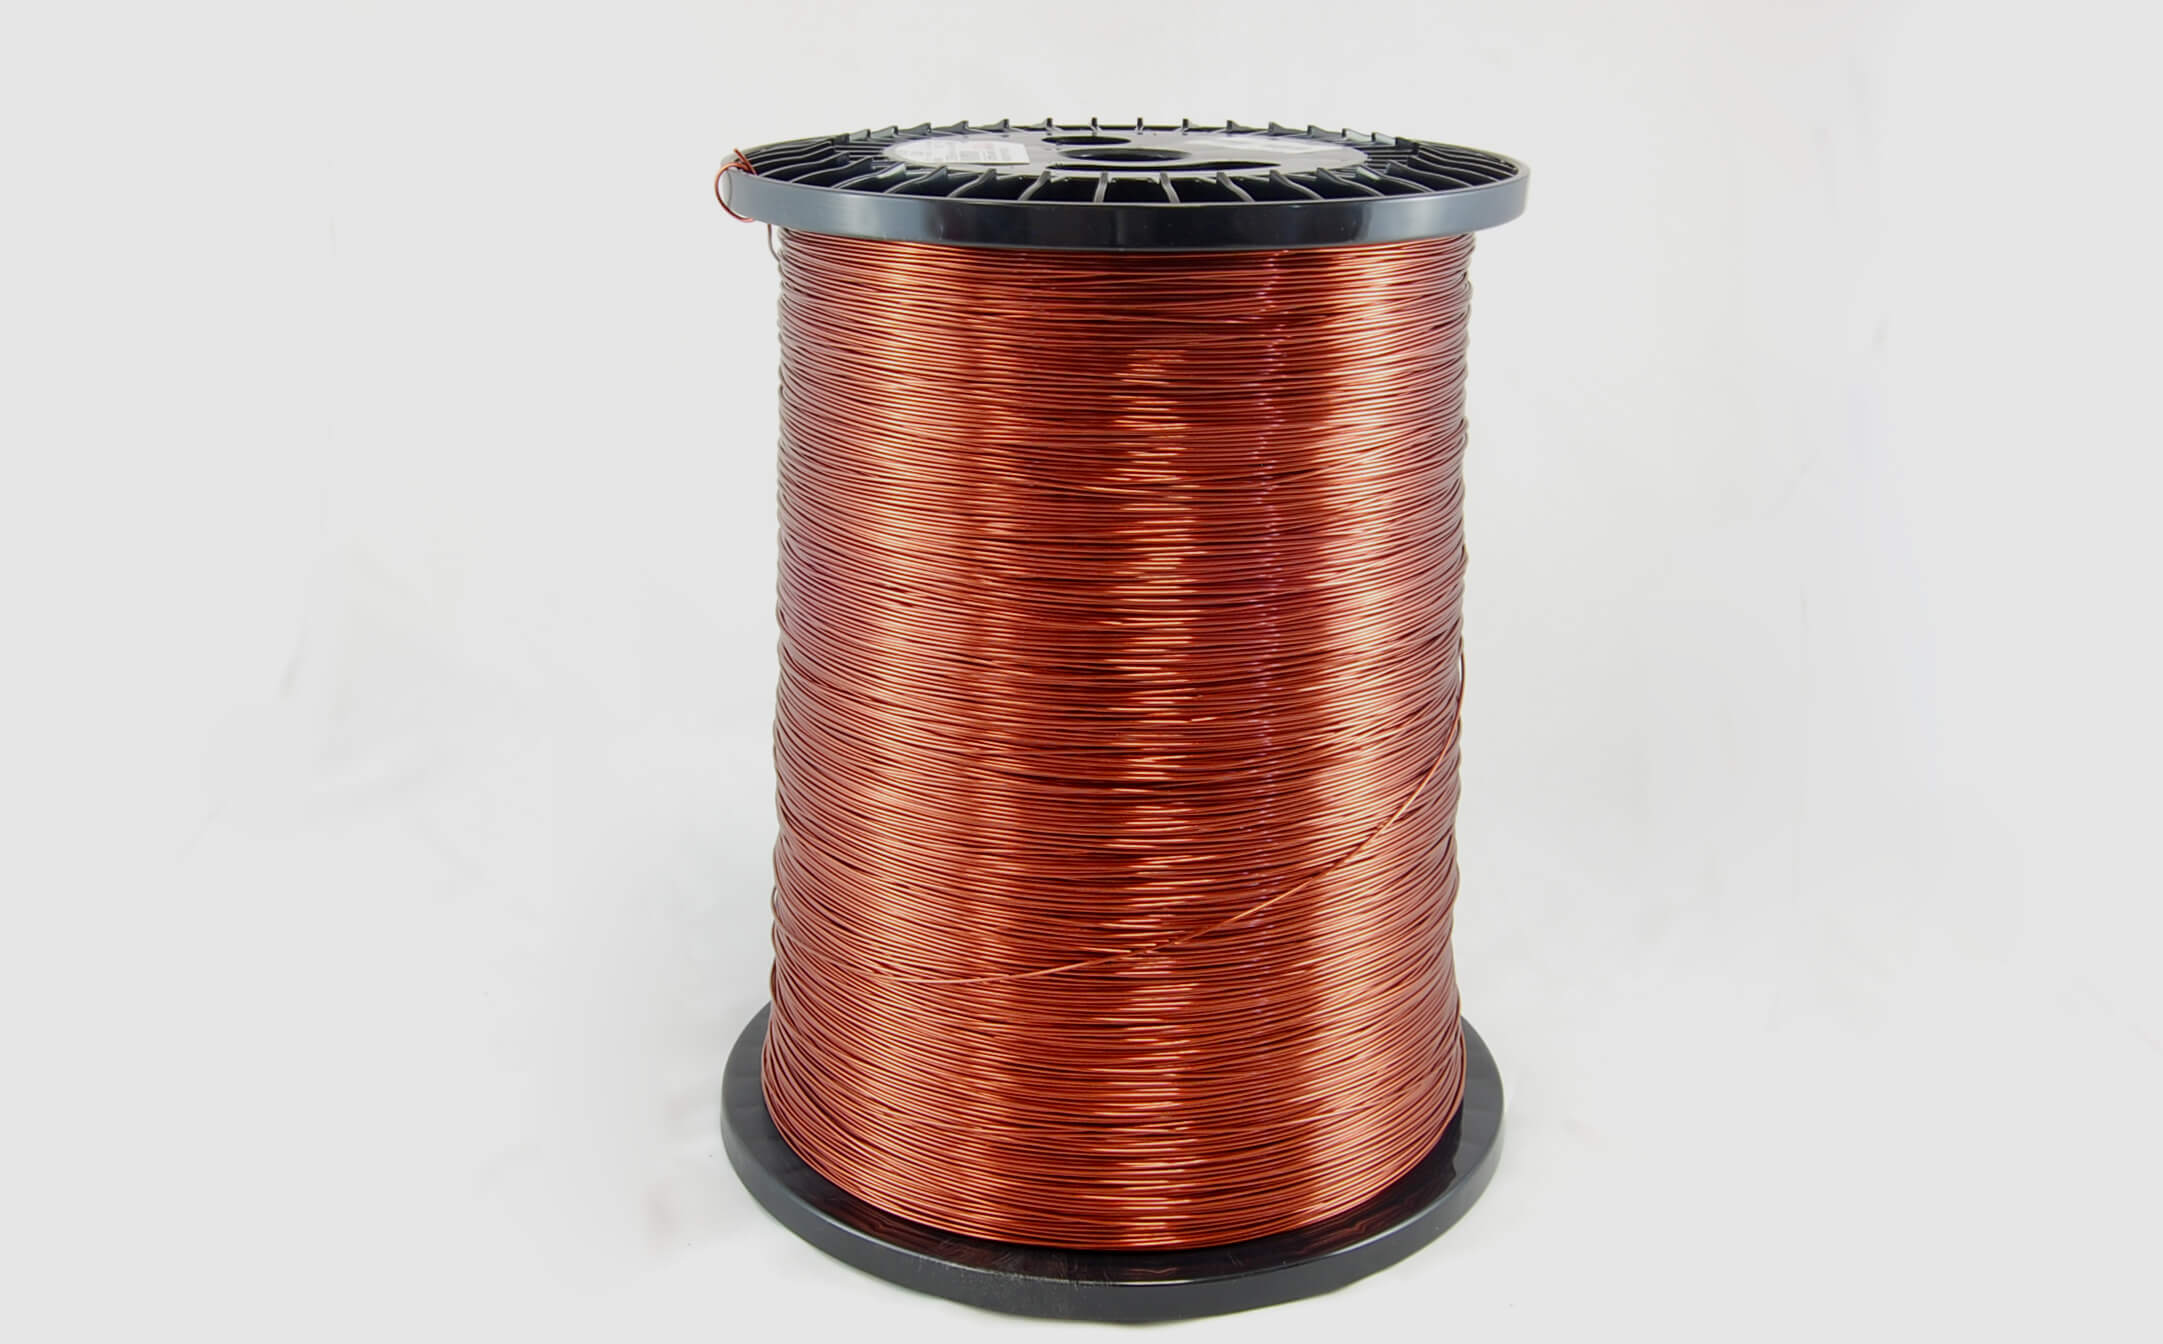 #11 Heavy Super Hyslik 200 Round HTAIH MW 35 Copper Magnet Wire 200°C, copper, 85 LB pail (average wght.)